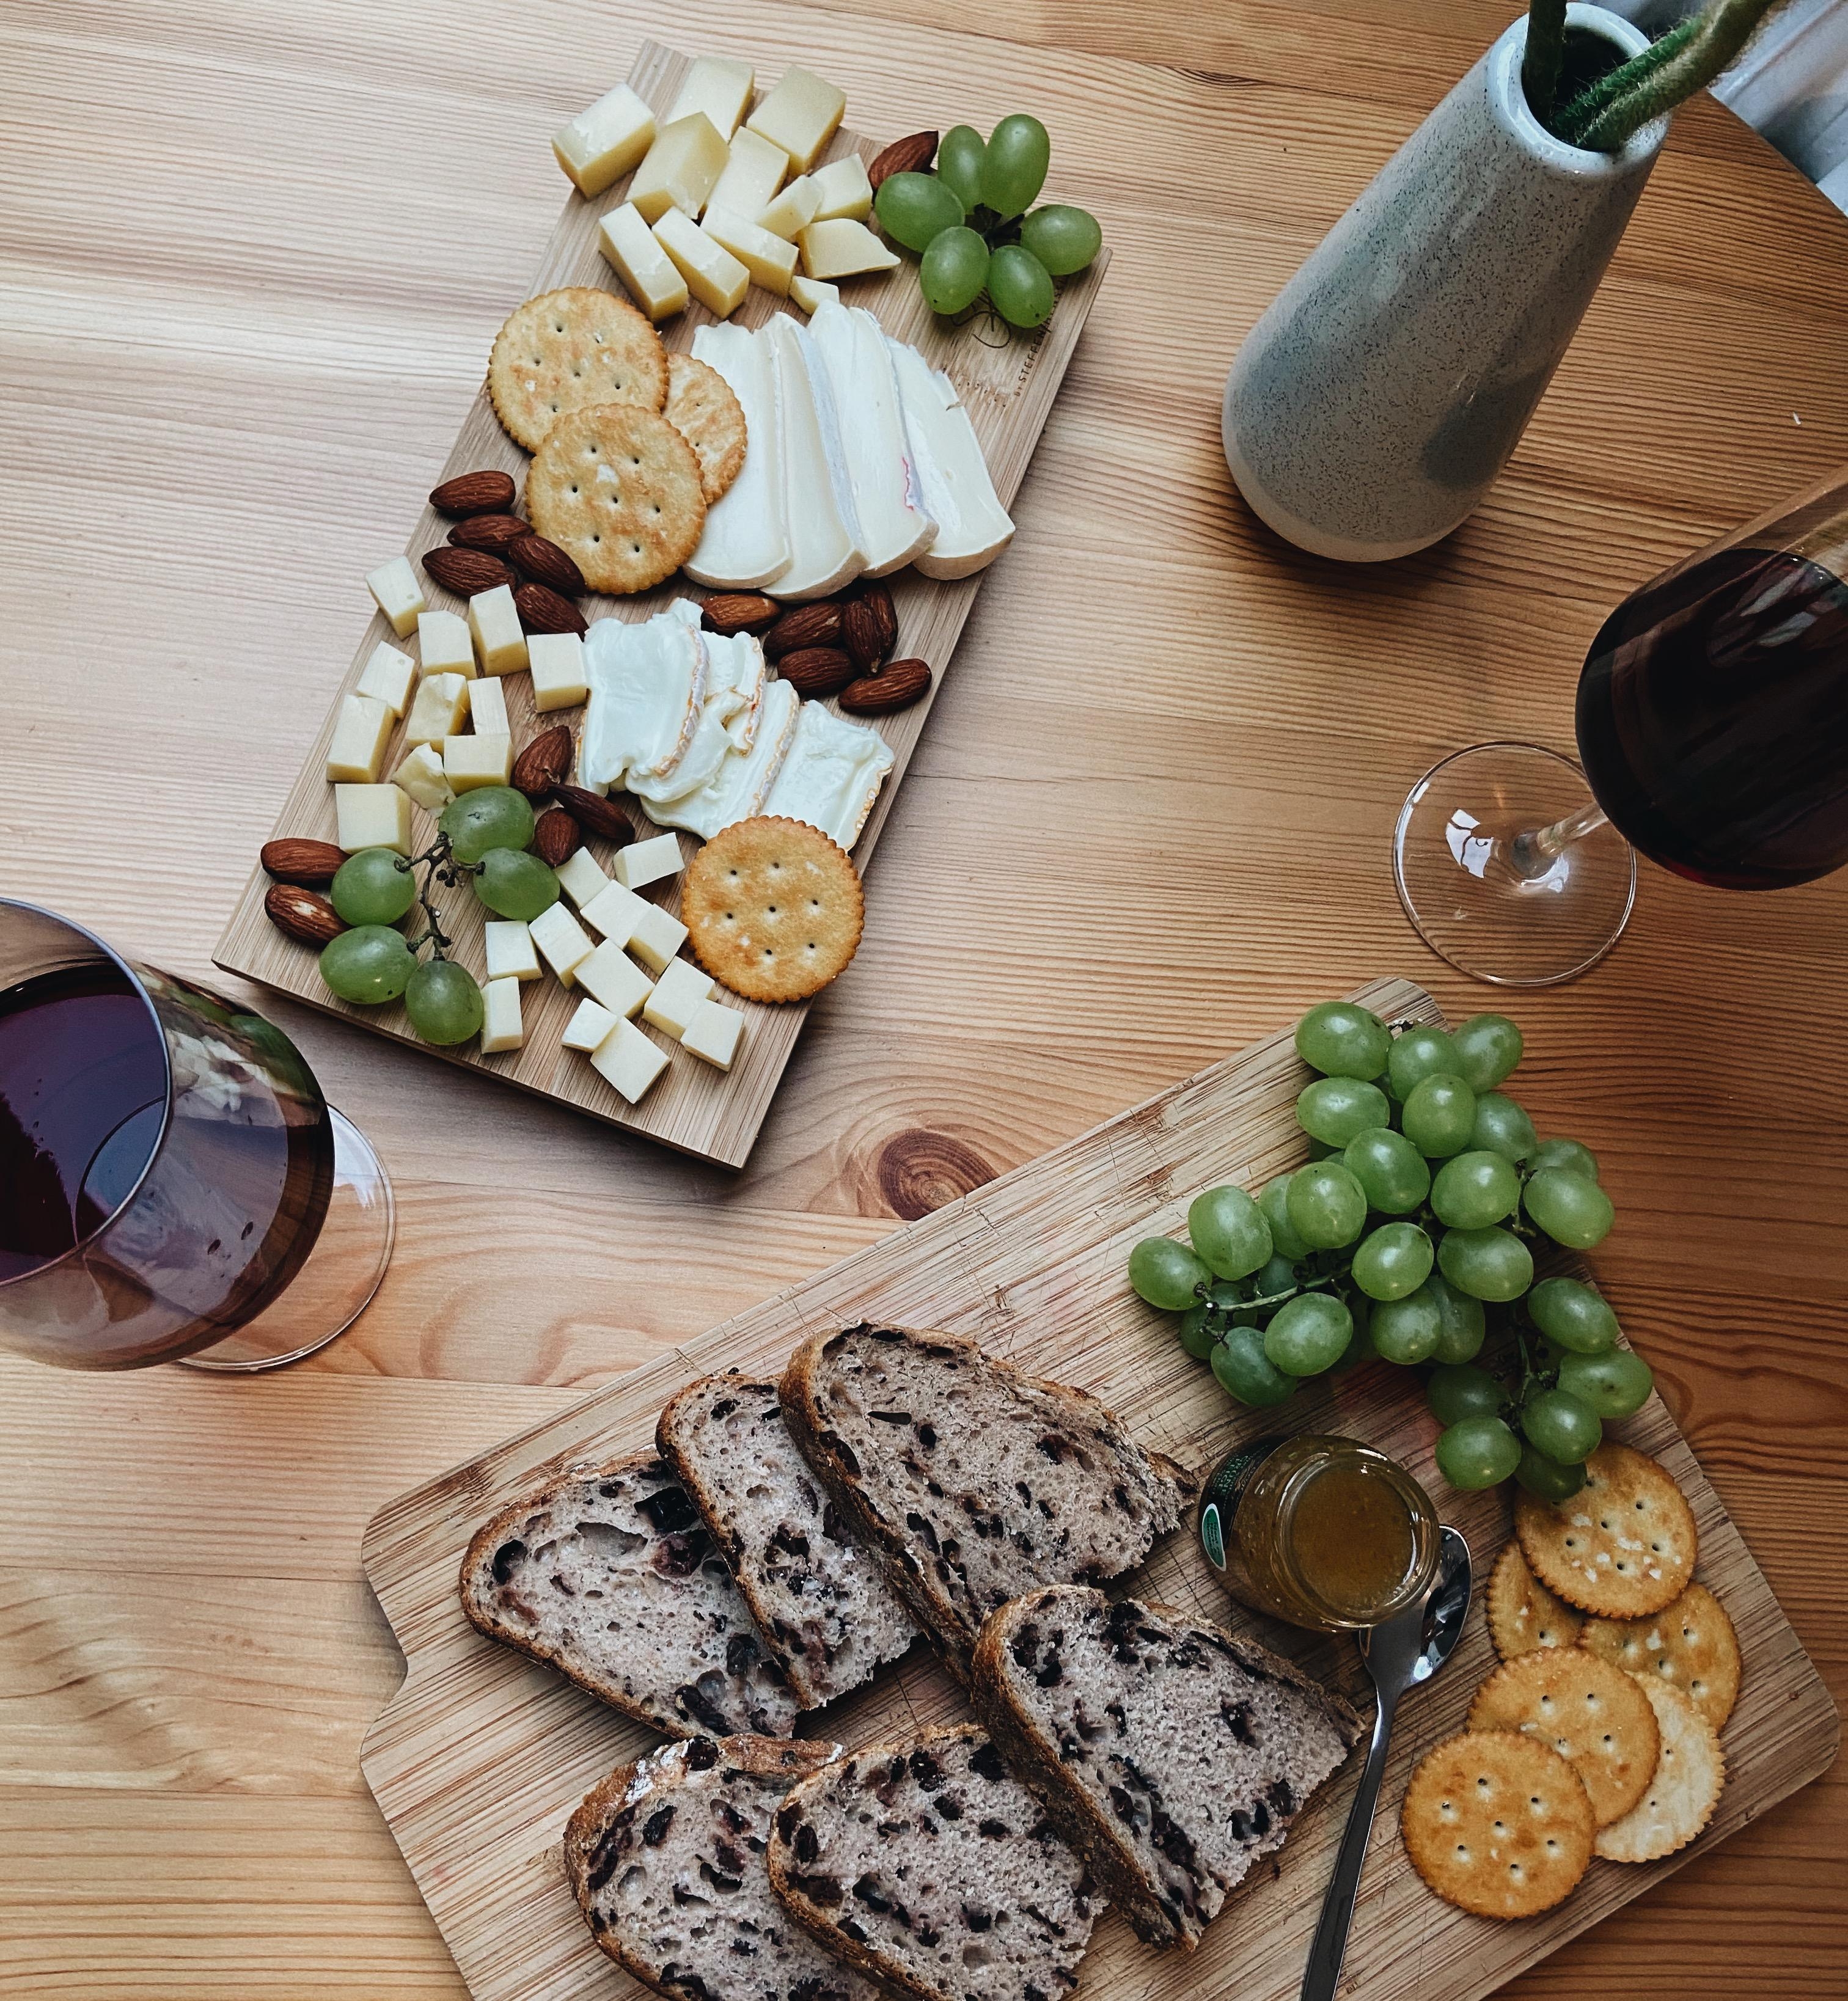 Käse und Wein irgendwer?🍷🖤 #food #käseliebe #vino #weekend